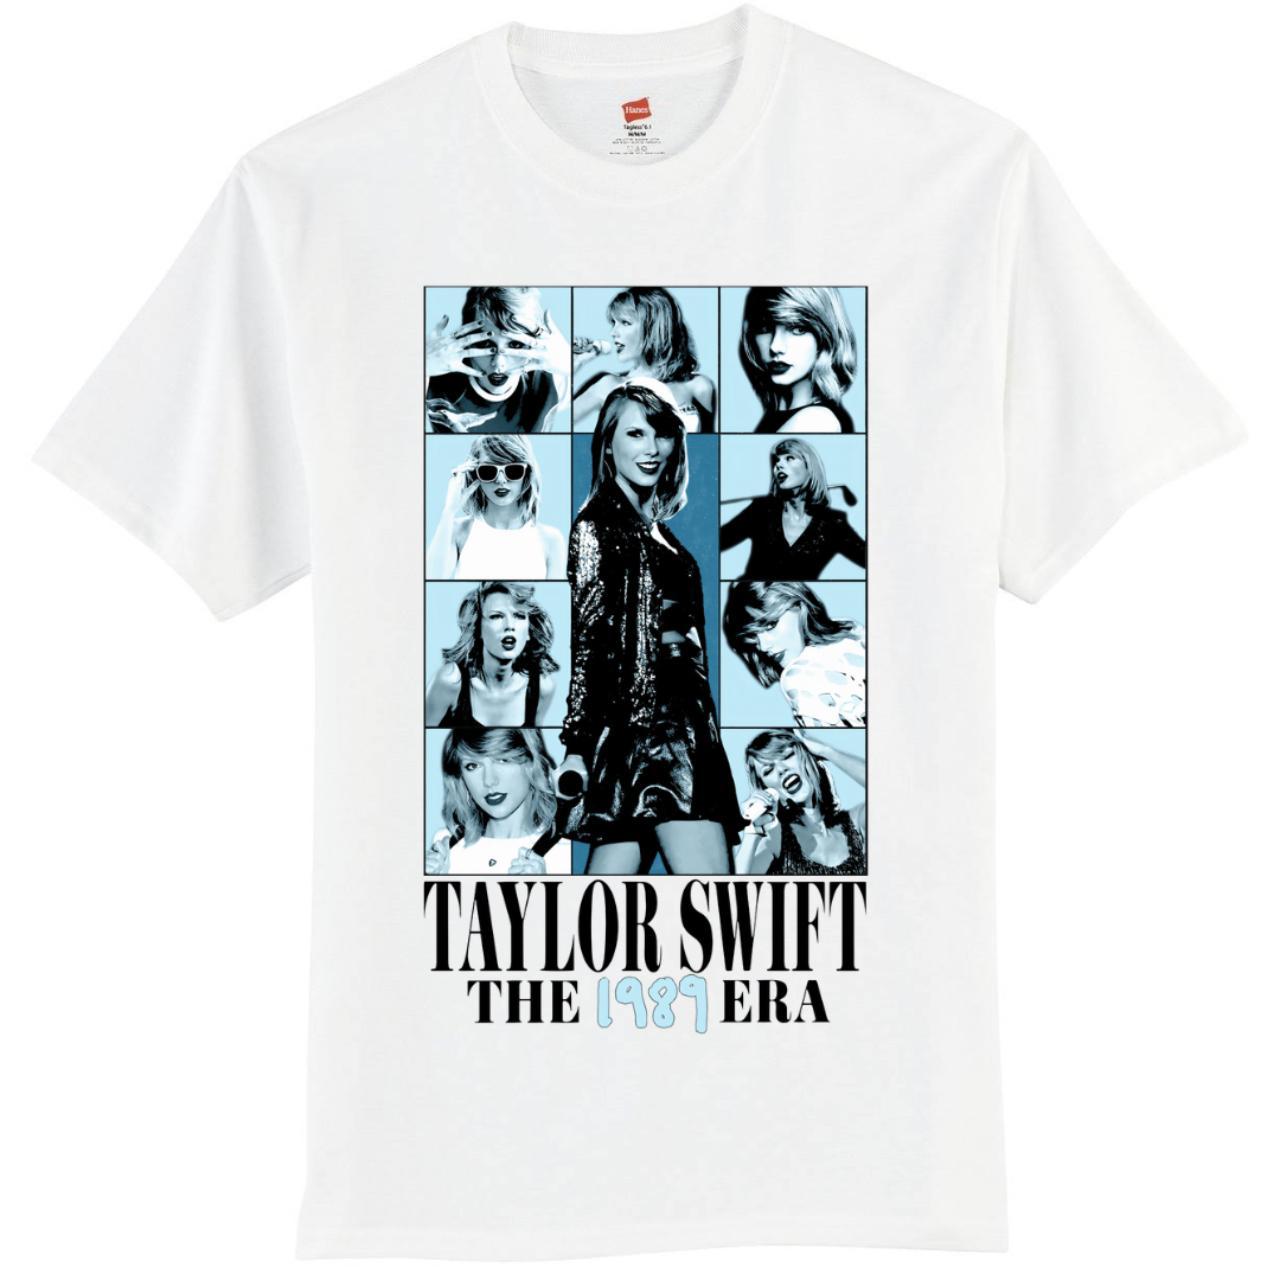 Taylor swift 1989 eras tour shirt - Depop